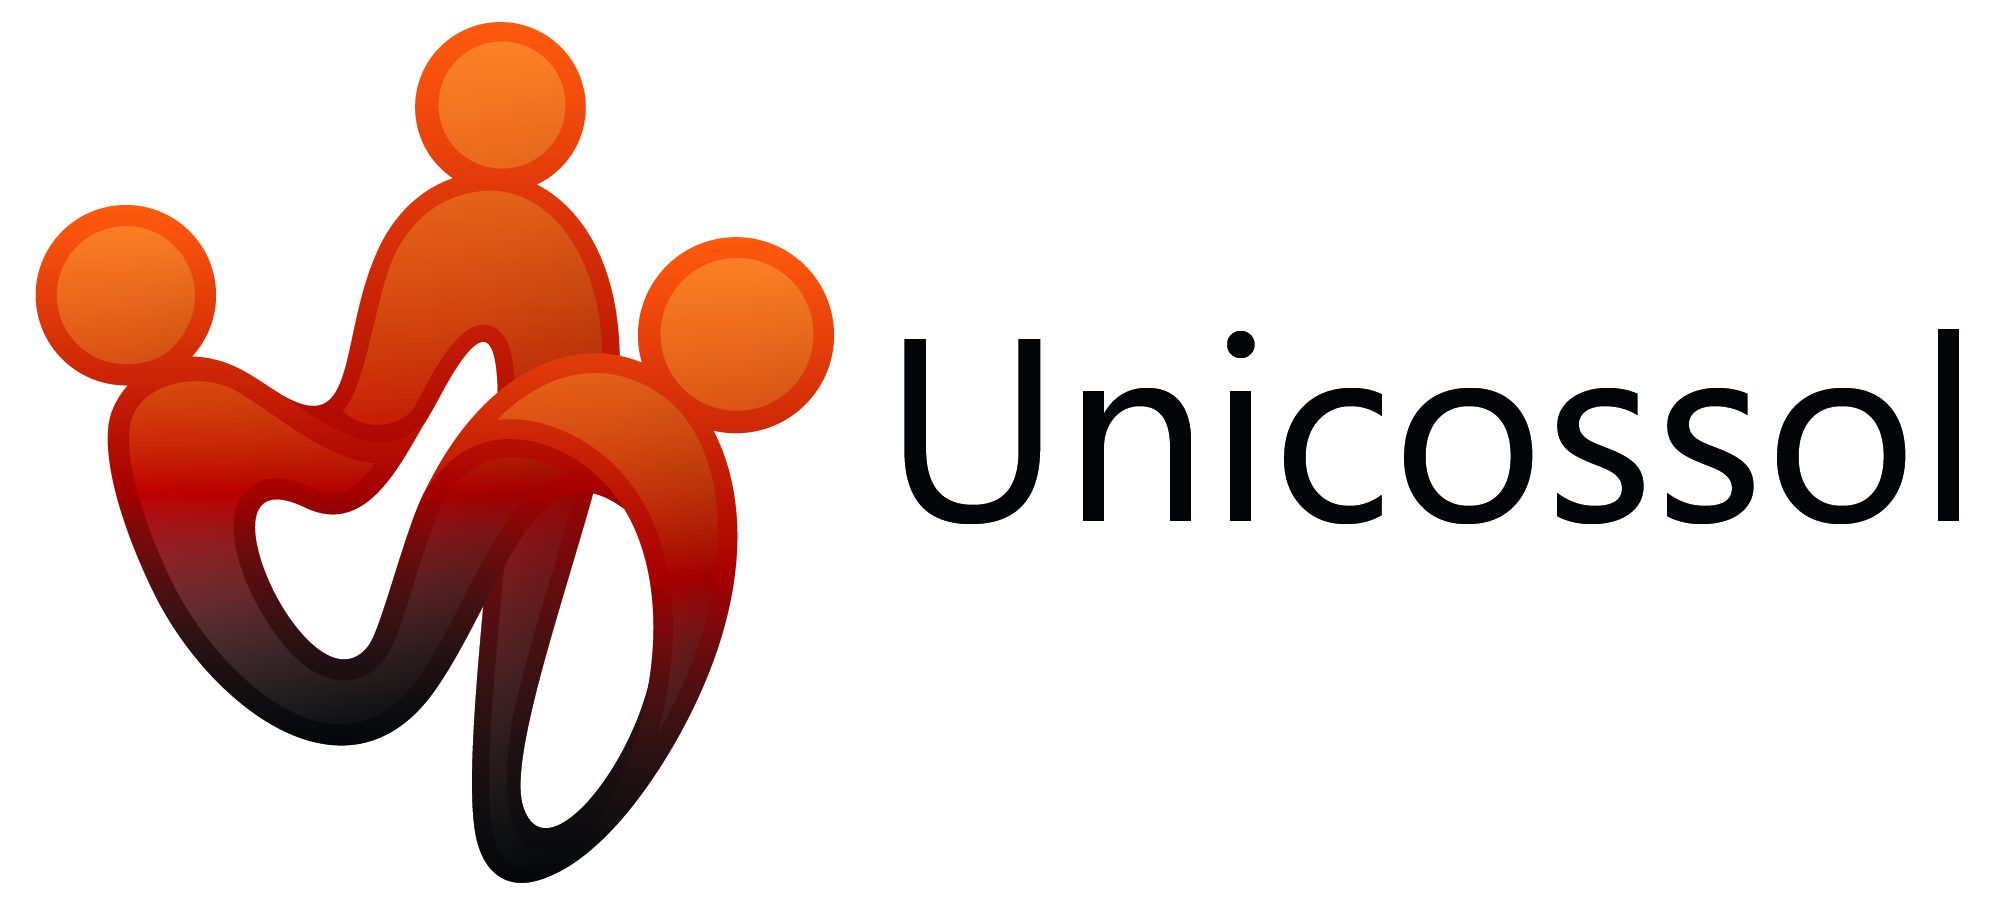 unicossol-Logo-con-colores-enviados.jpeg